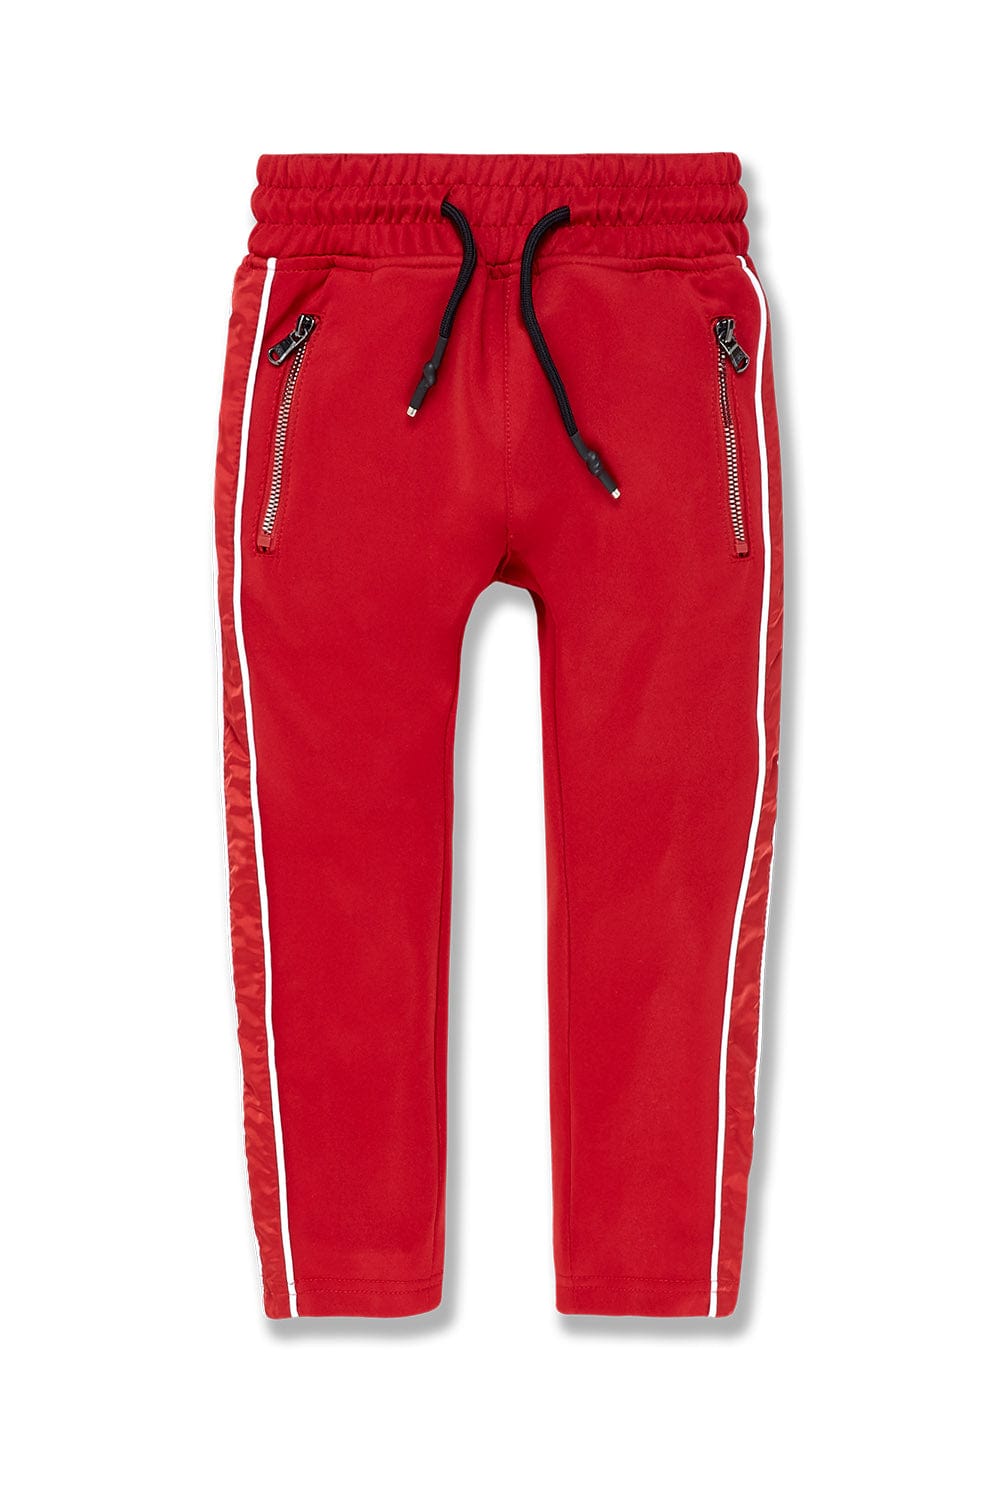 Adidas Originals Adicolor Cargo Fleece Pants - Boys' Grade School |  Foxvalley Mall